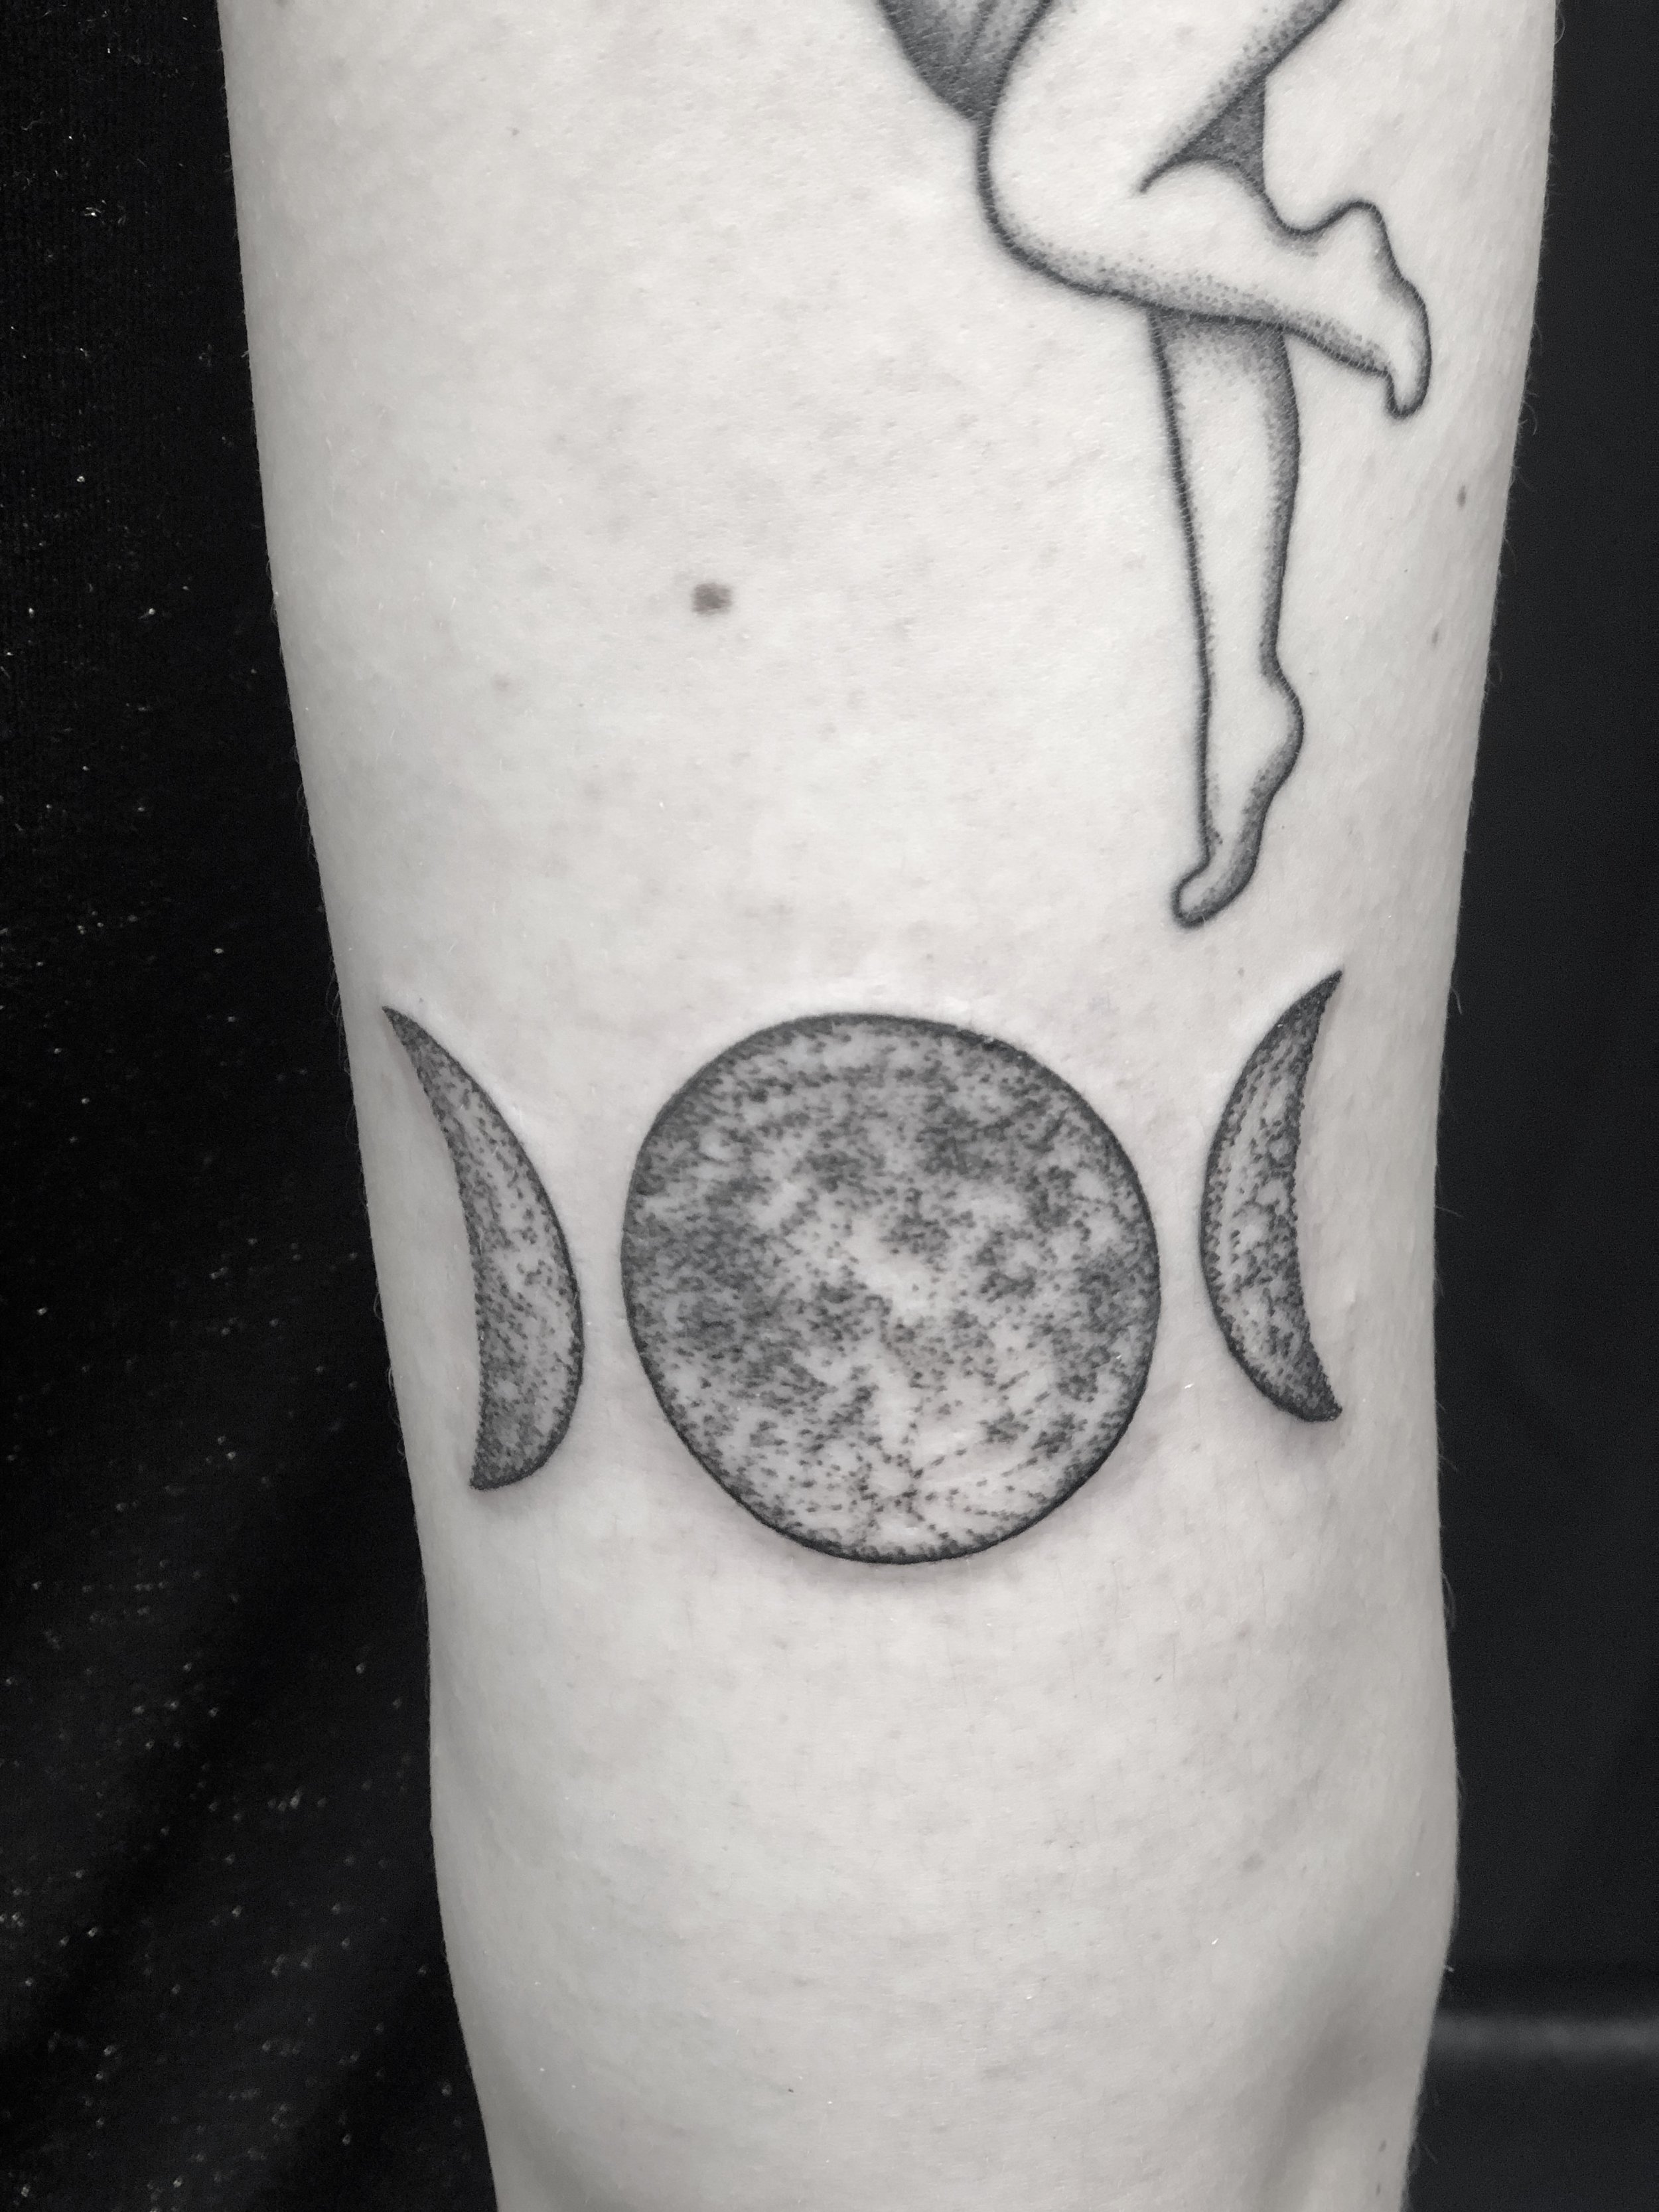 Full Moon Tattoo - Best Tattoo Ideas Gallery